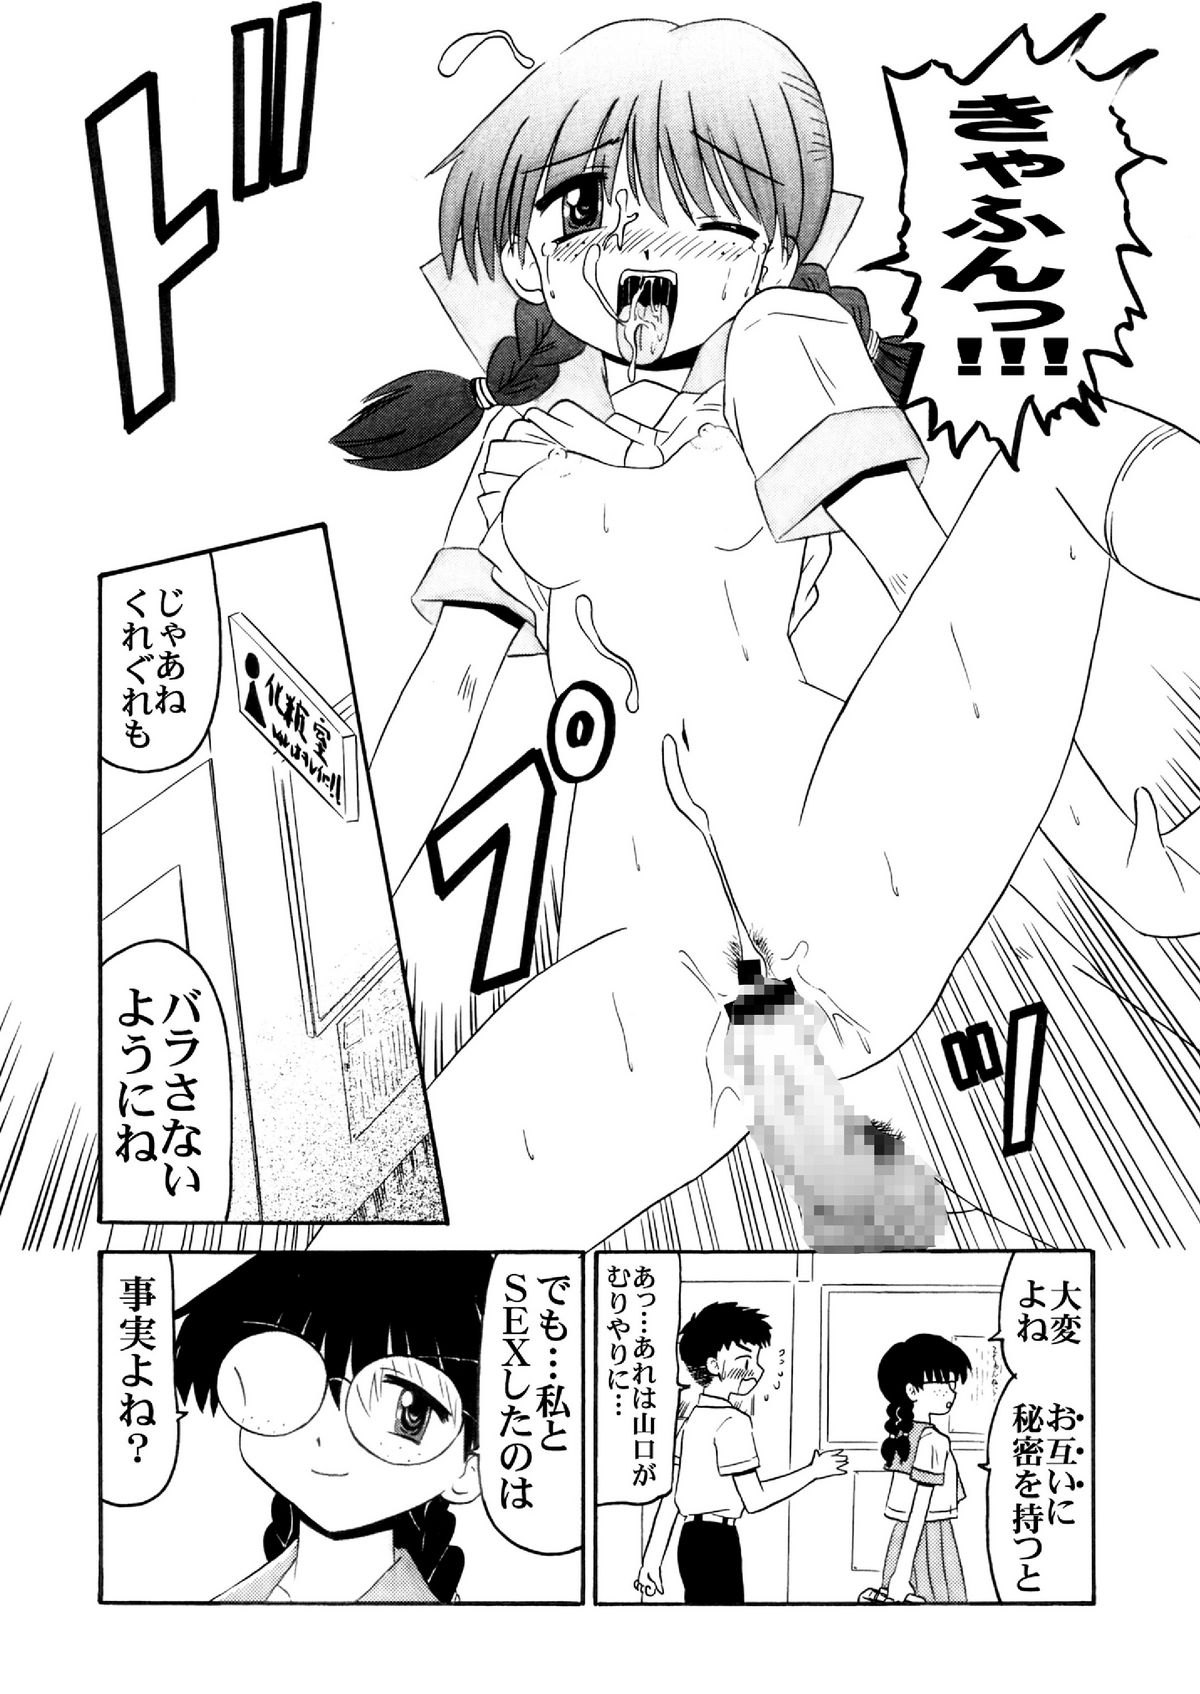 [Salvage Kouboh] Sousaku tamashii 01 page 22 full